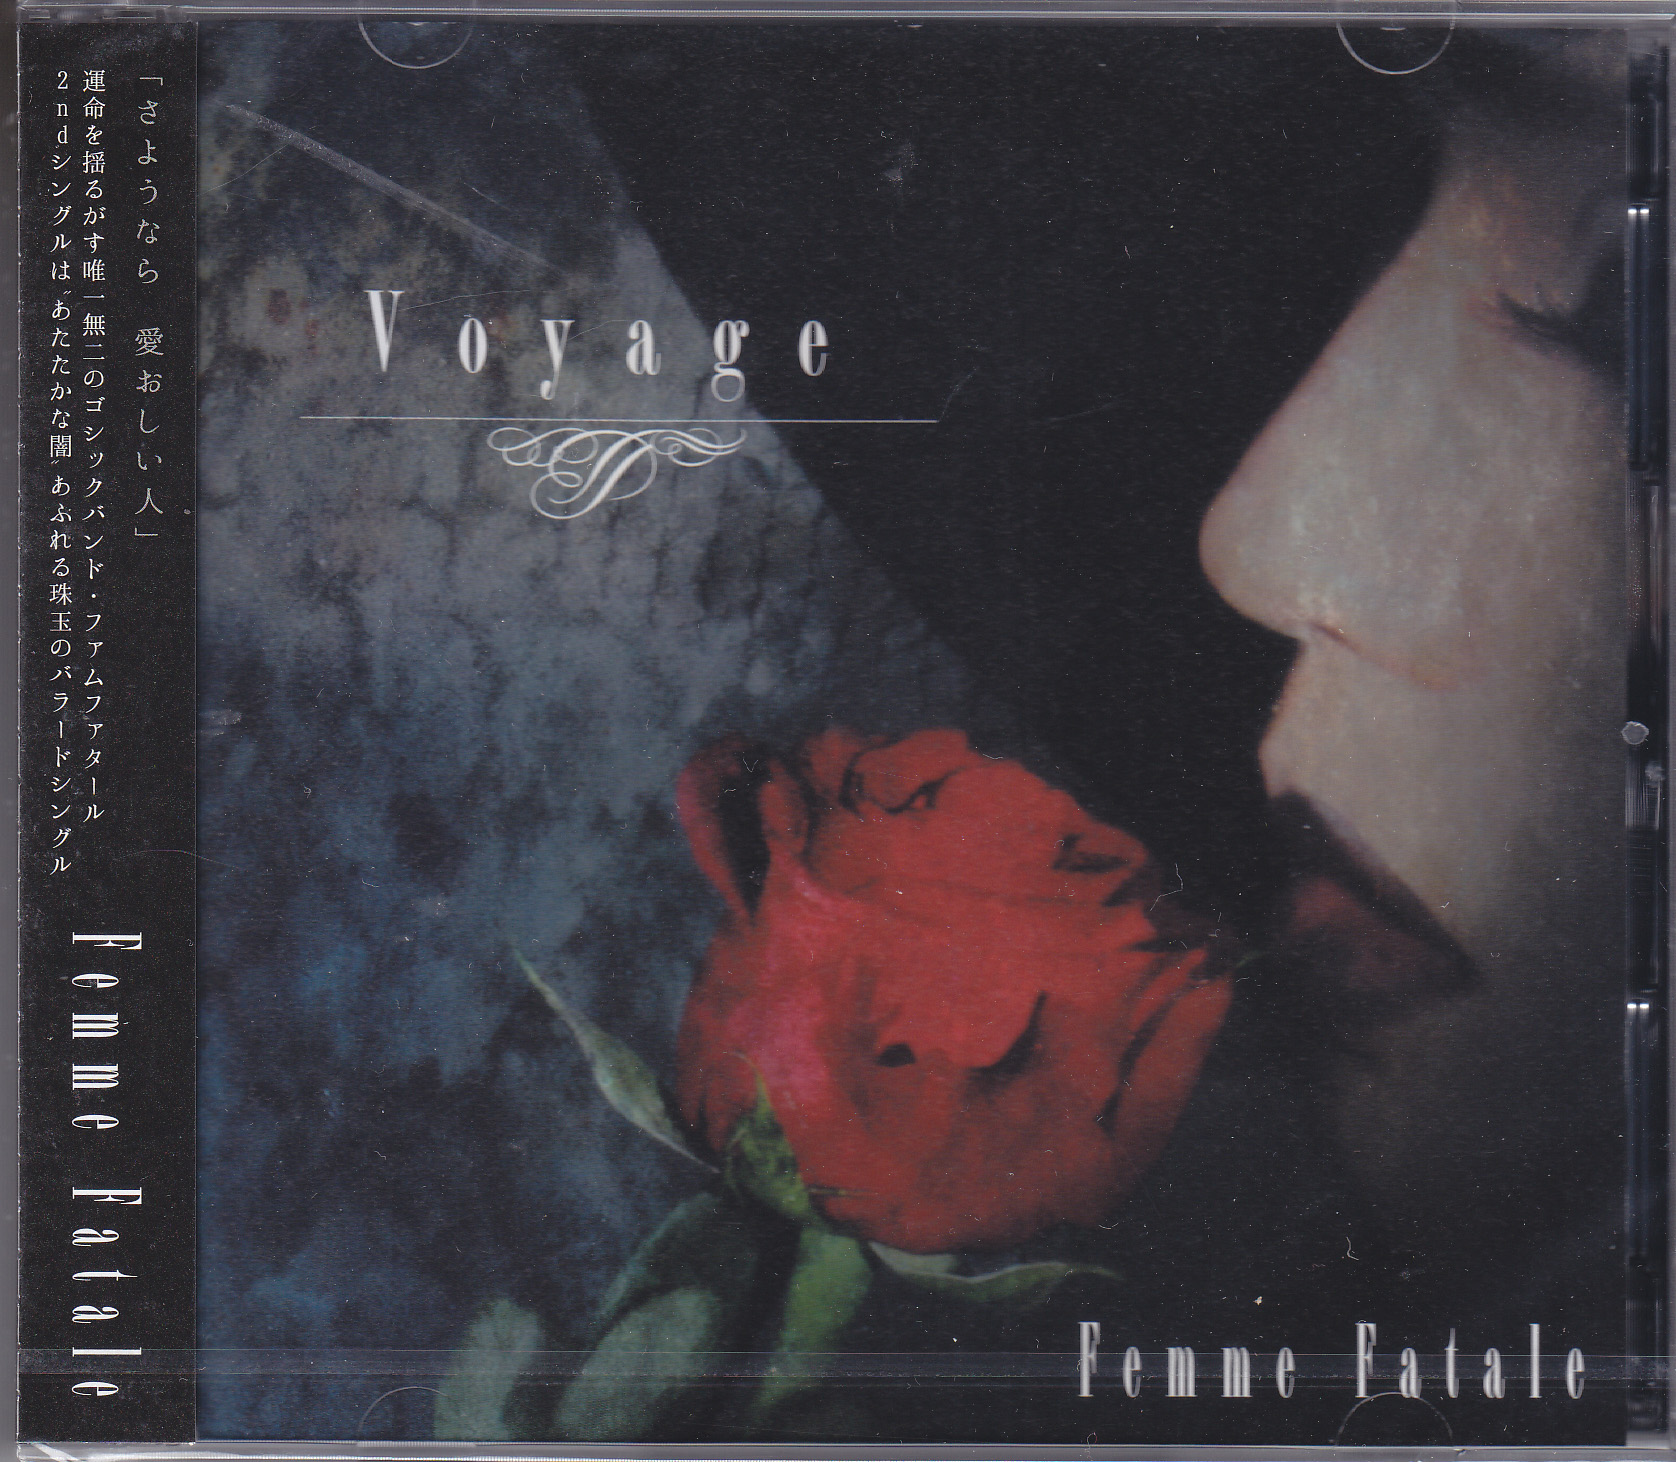 Femme Fatale ( ファムファタール )  の CD Voyage【DVD付初回盤】